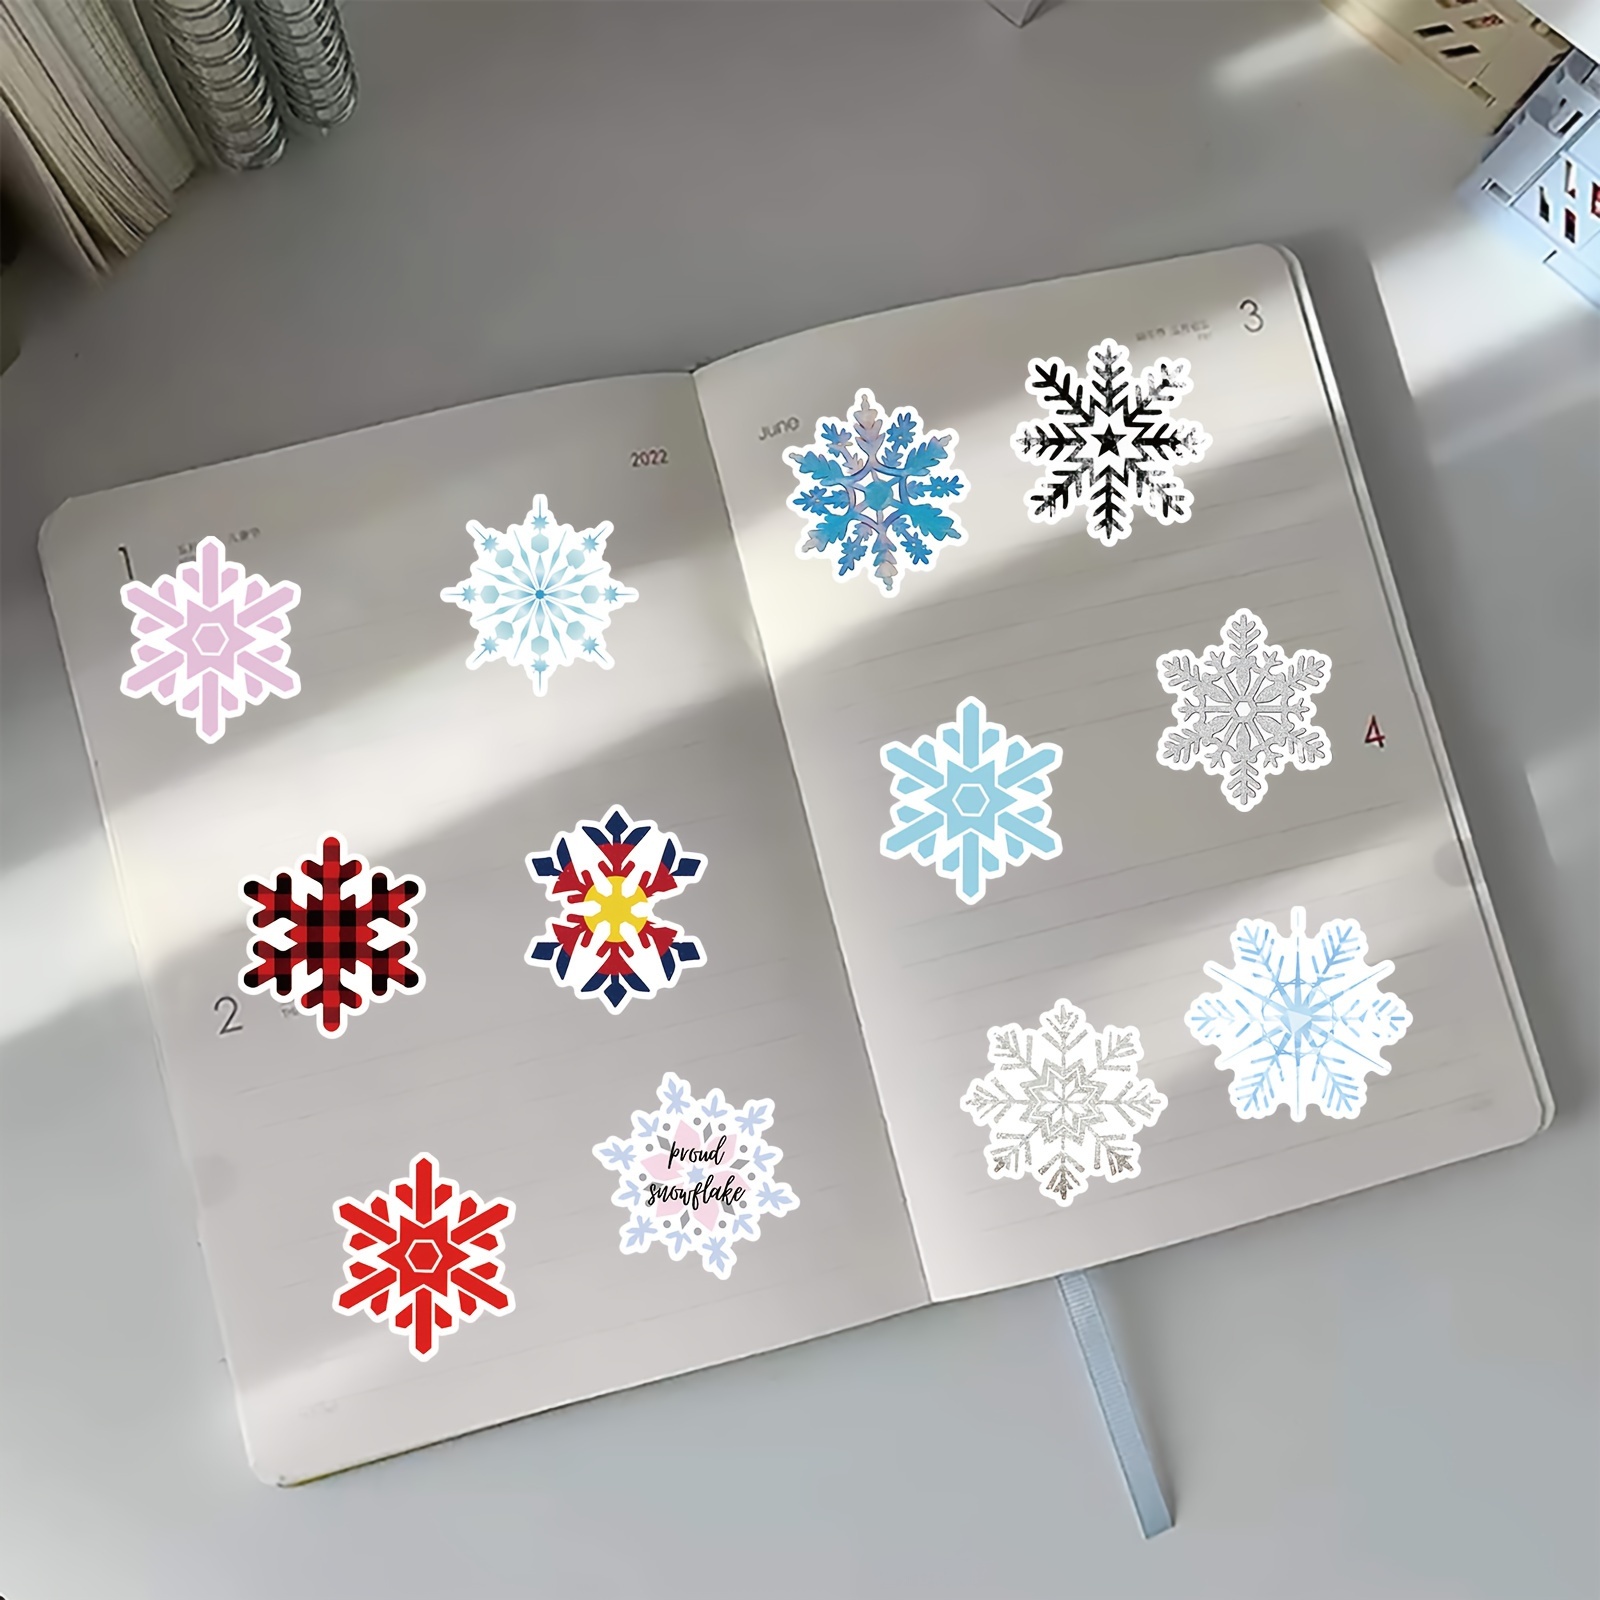 Foam Glitter Snowflake Stickers - Pack of 120, Foam